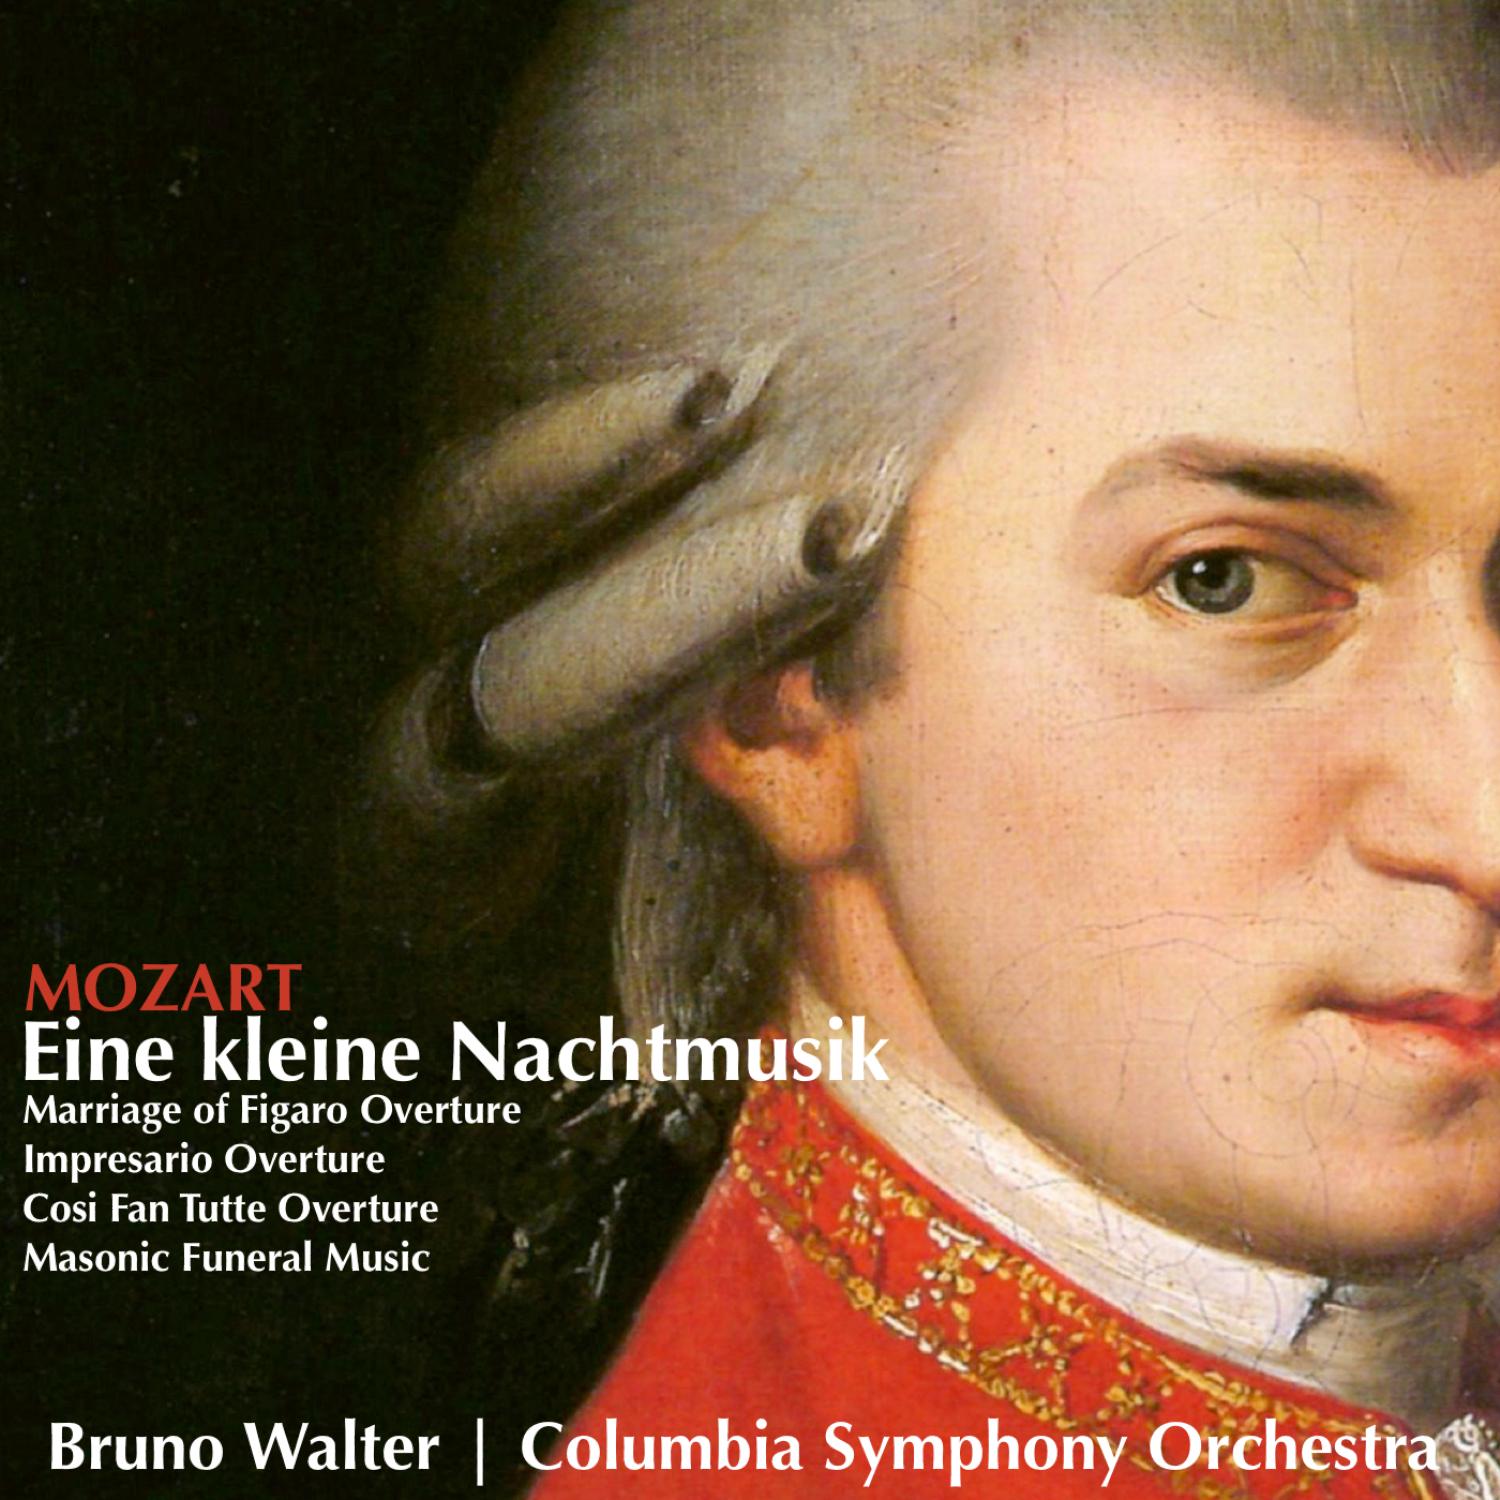 Serenade No.13 for Strings in G major, K525, 'Eine kleine Nachtmusik': II. Romanze